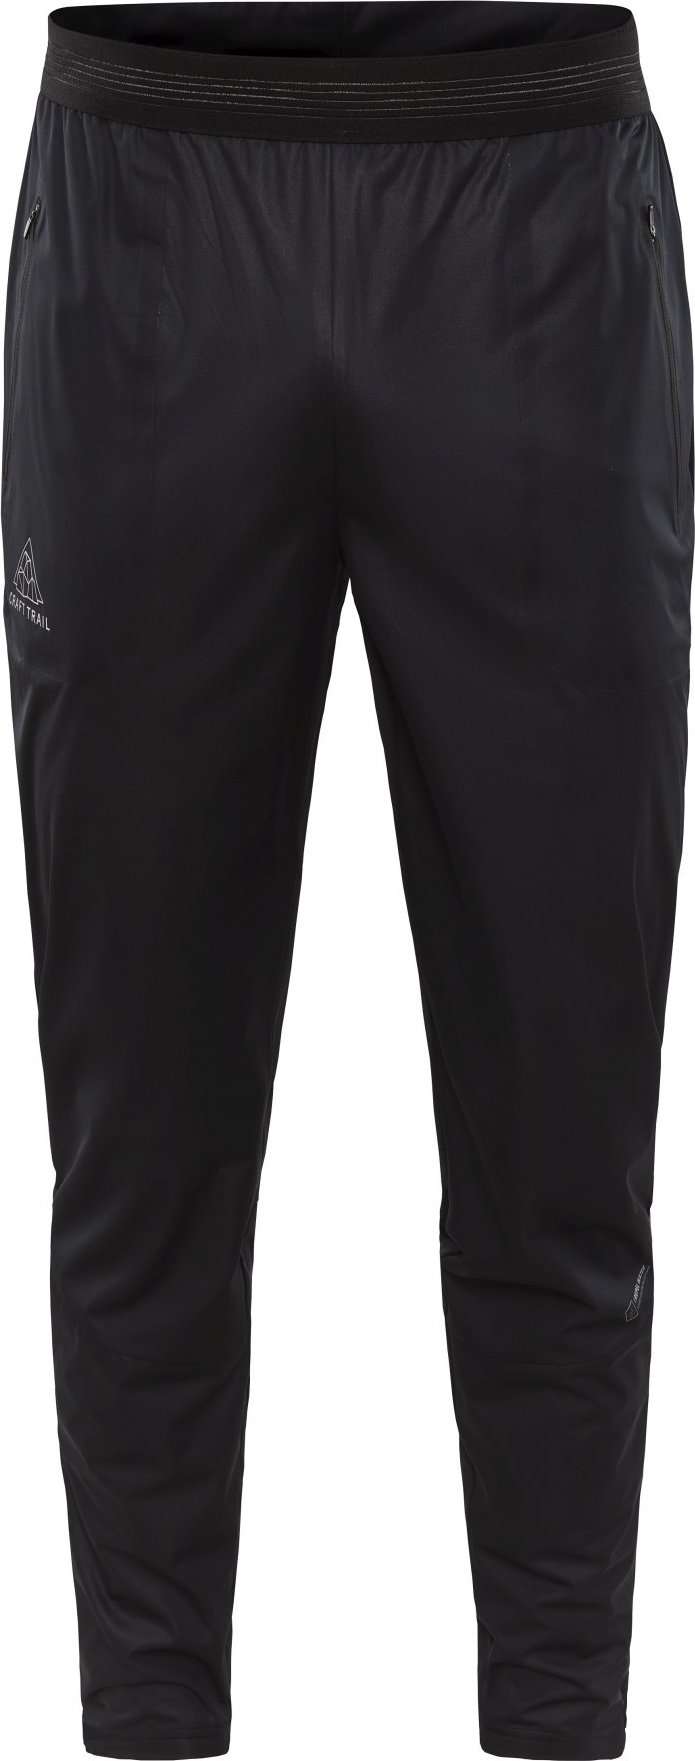 Pánské běžecké kalhoty CRAFT Pro Hydro černé Velikost: XL